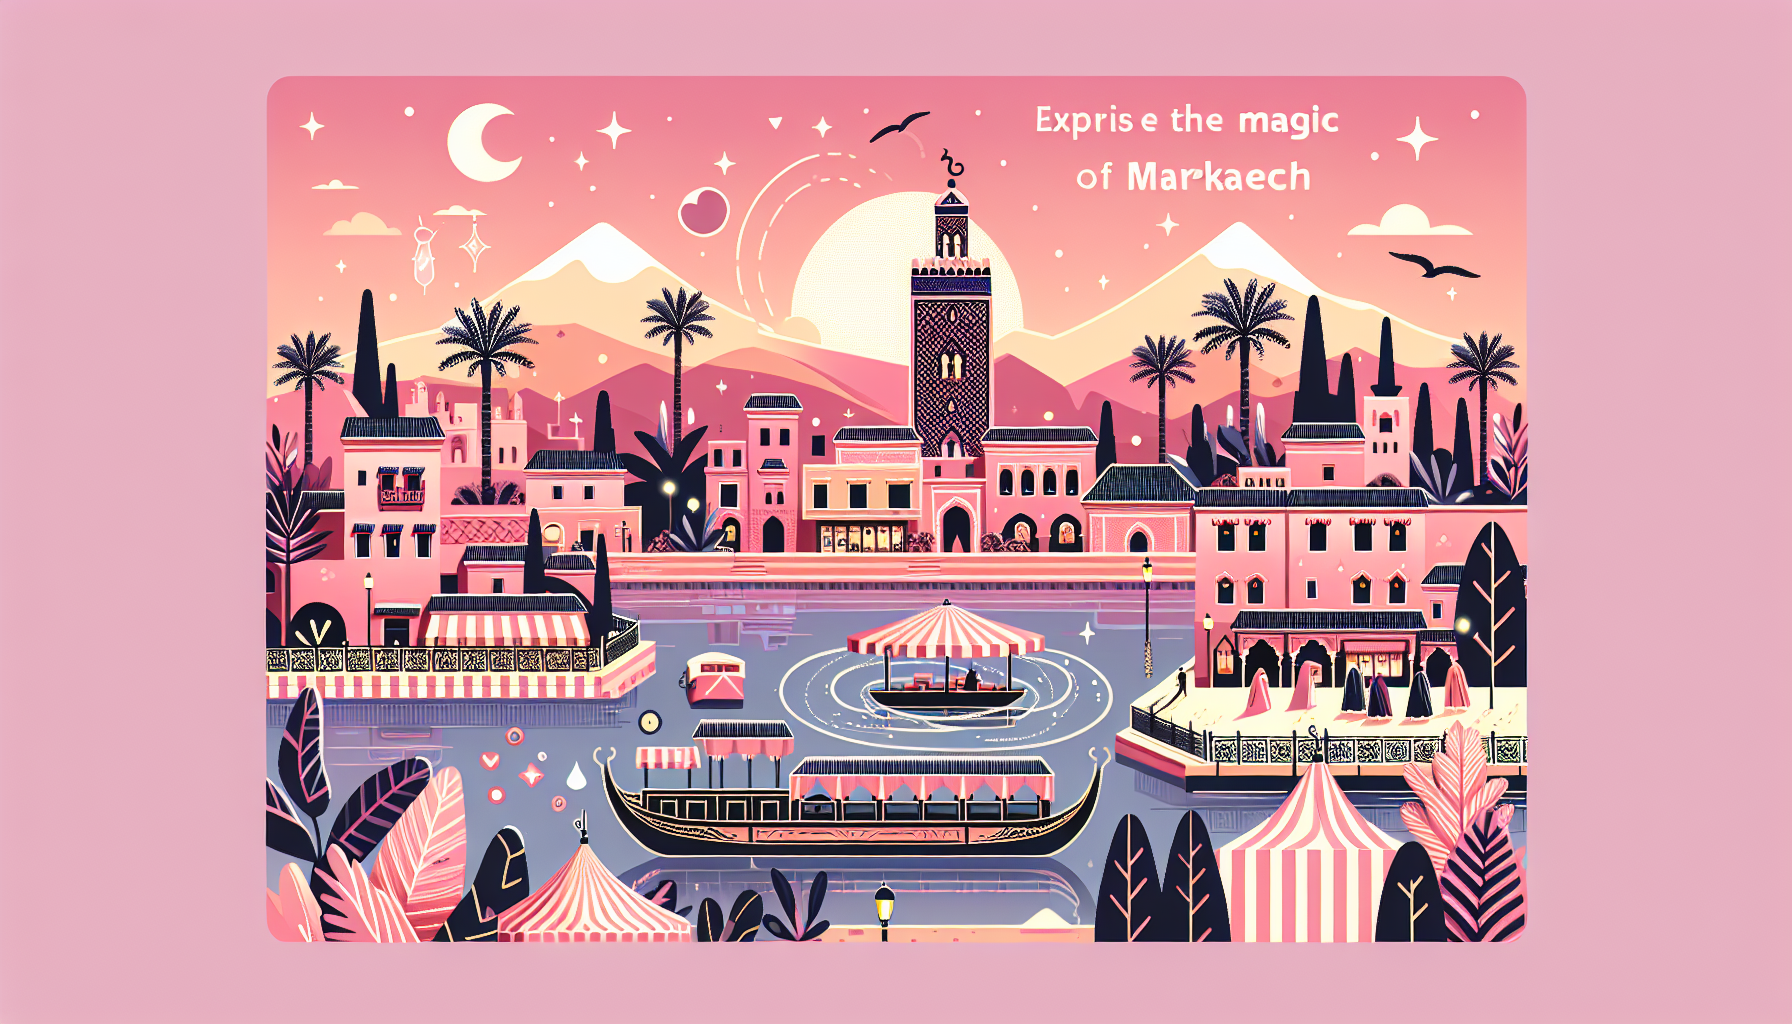 découvrez pourquoi marrakech est la destination incontournable au maroc, entre sa richesse culturelle, son patrimoine historique et son ambiance envoûtante.